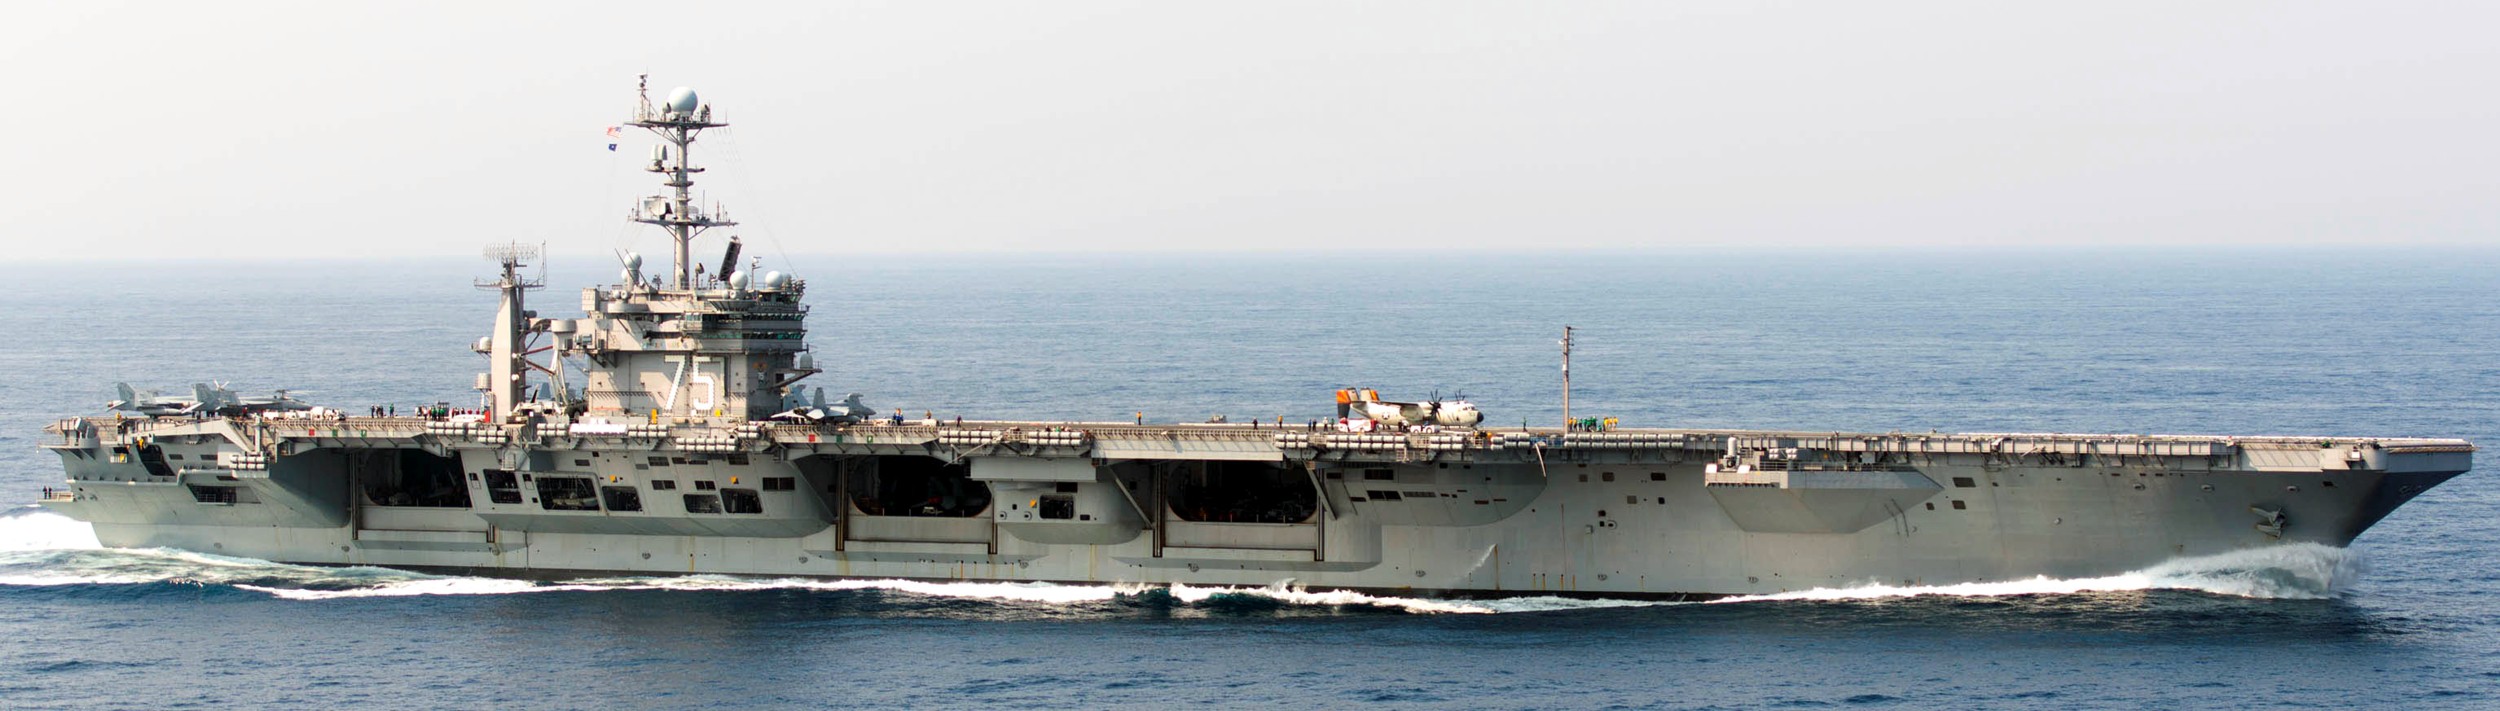 uss harry s. truman cvn-75 aircraft carrier 35